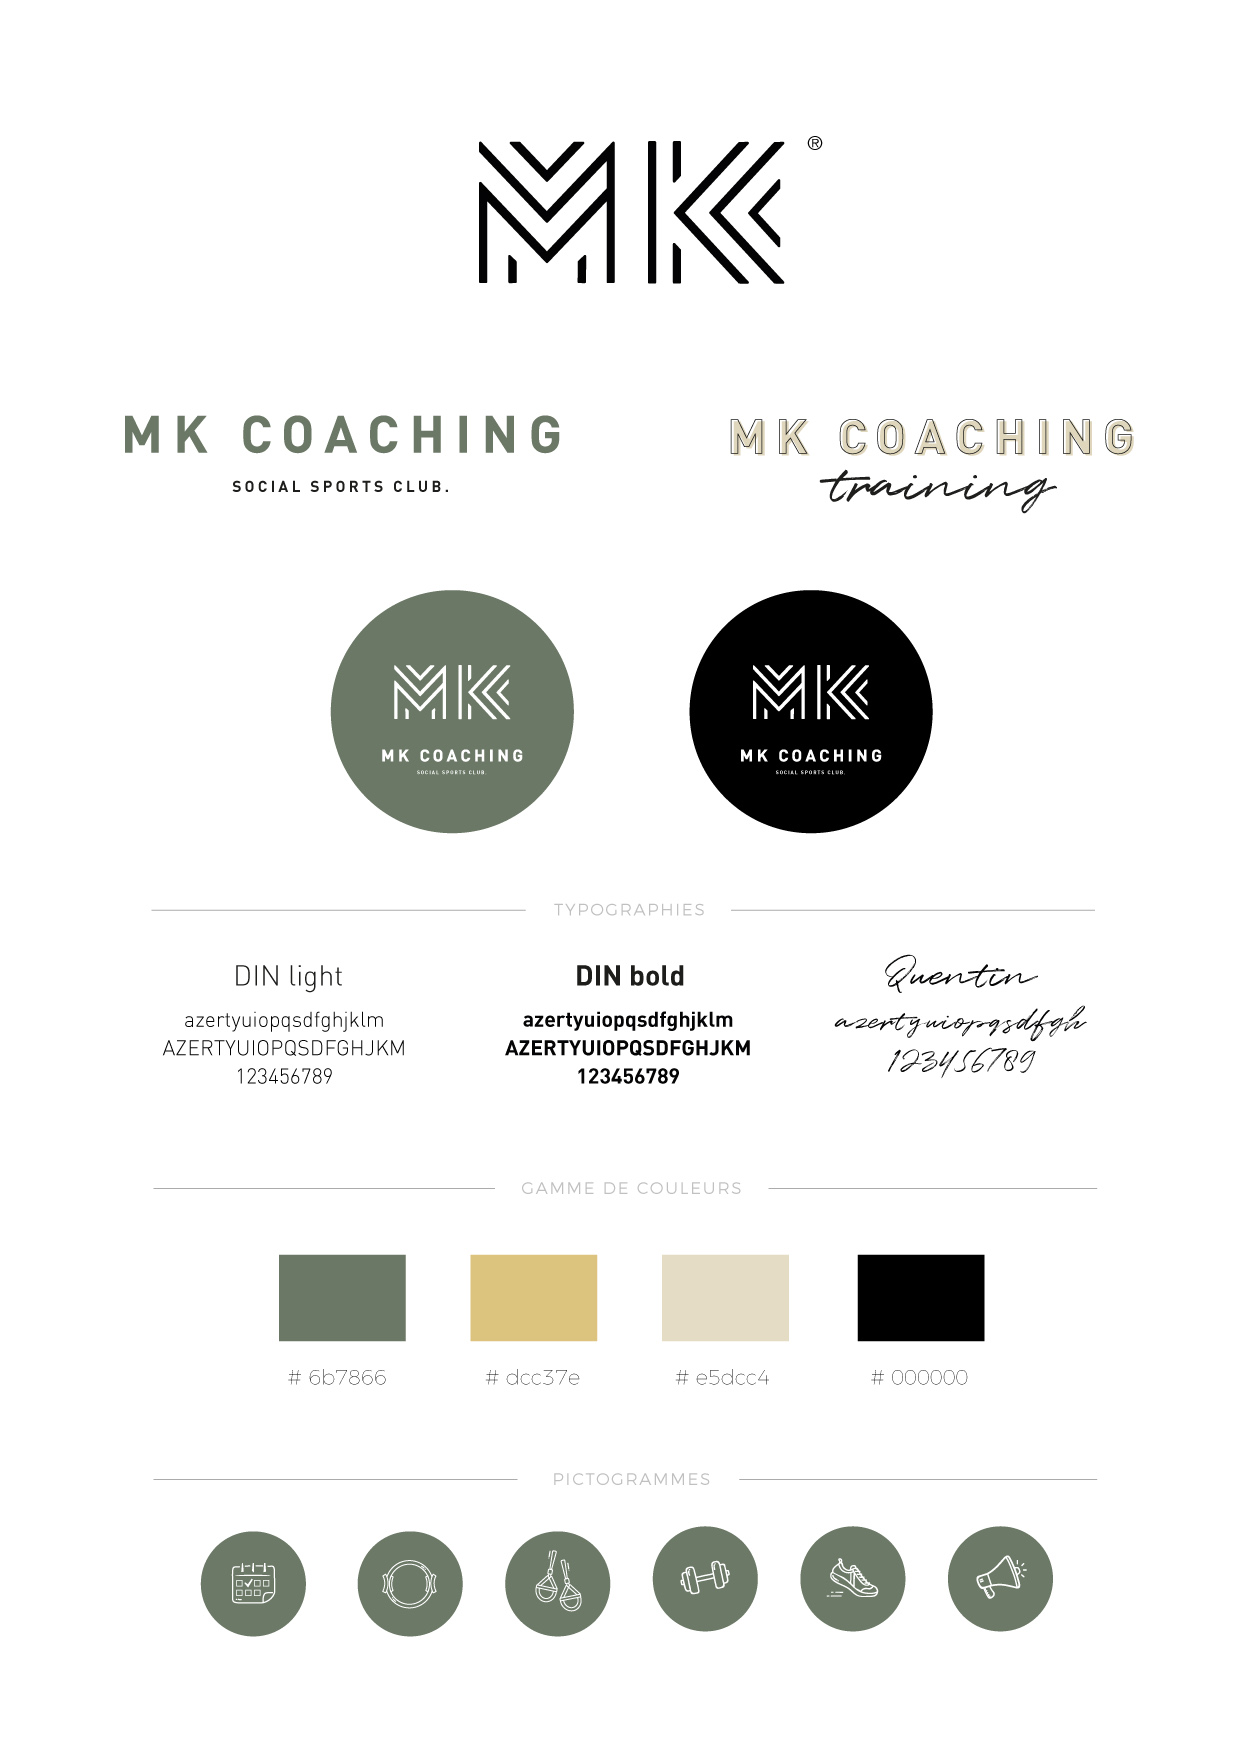 MK coaching branding kit